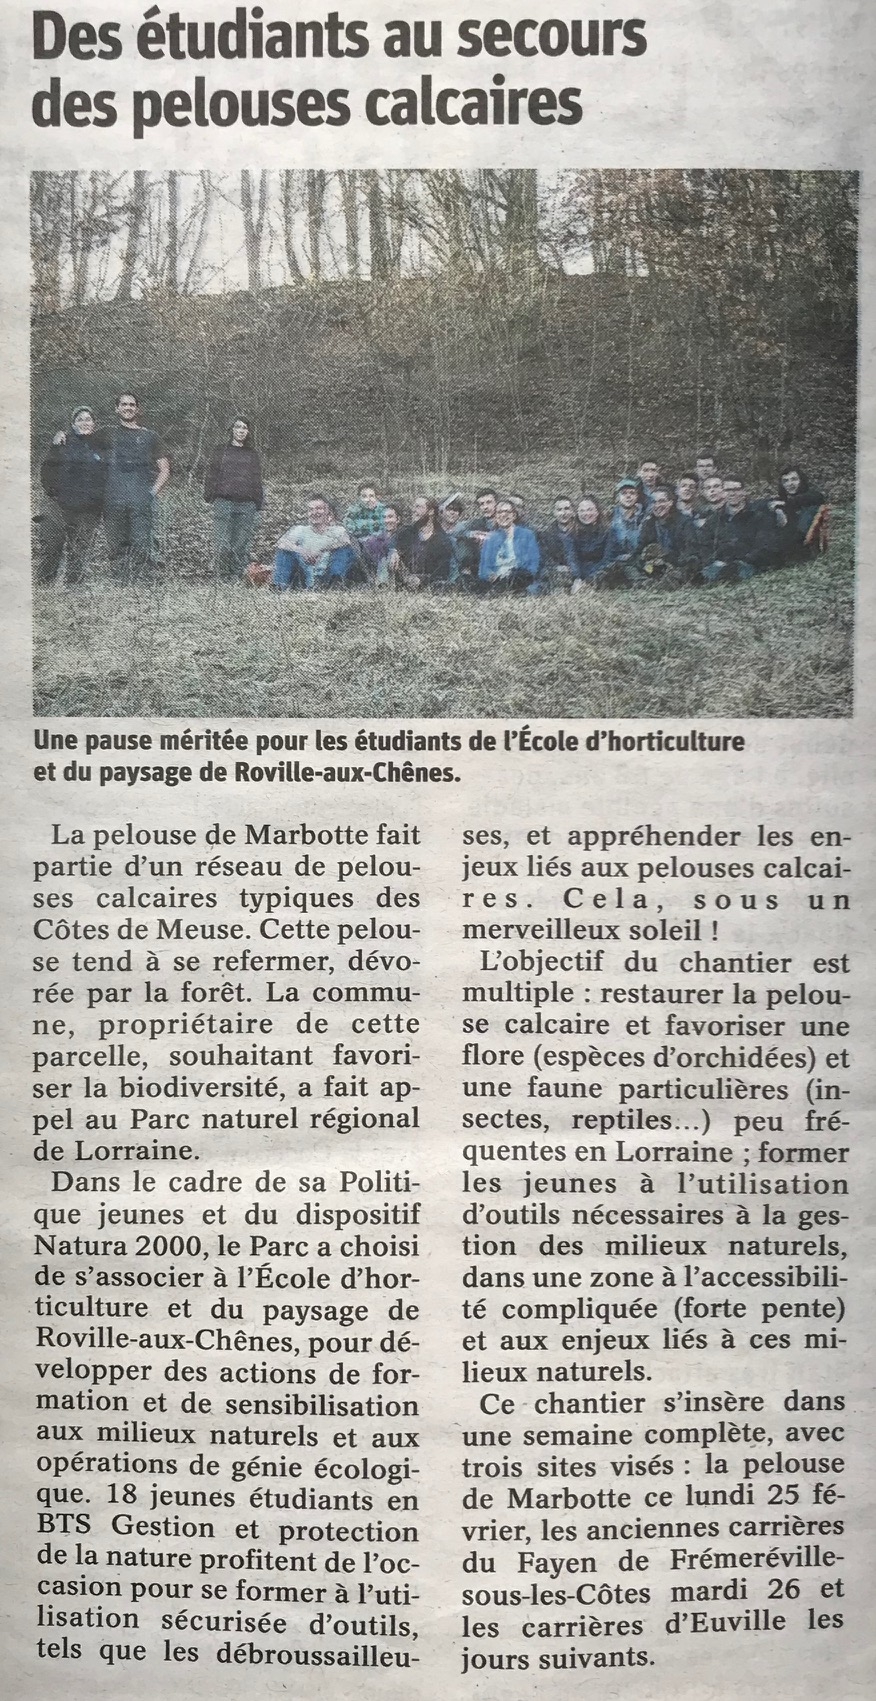 les lves de l'cole d'horticulture de Roville-aux-Chnes nettoient la pelouse calcaire de Frmerville-sous-les-Ctes